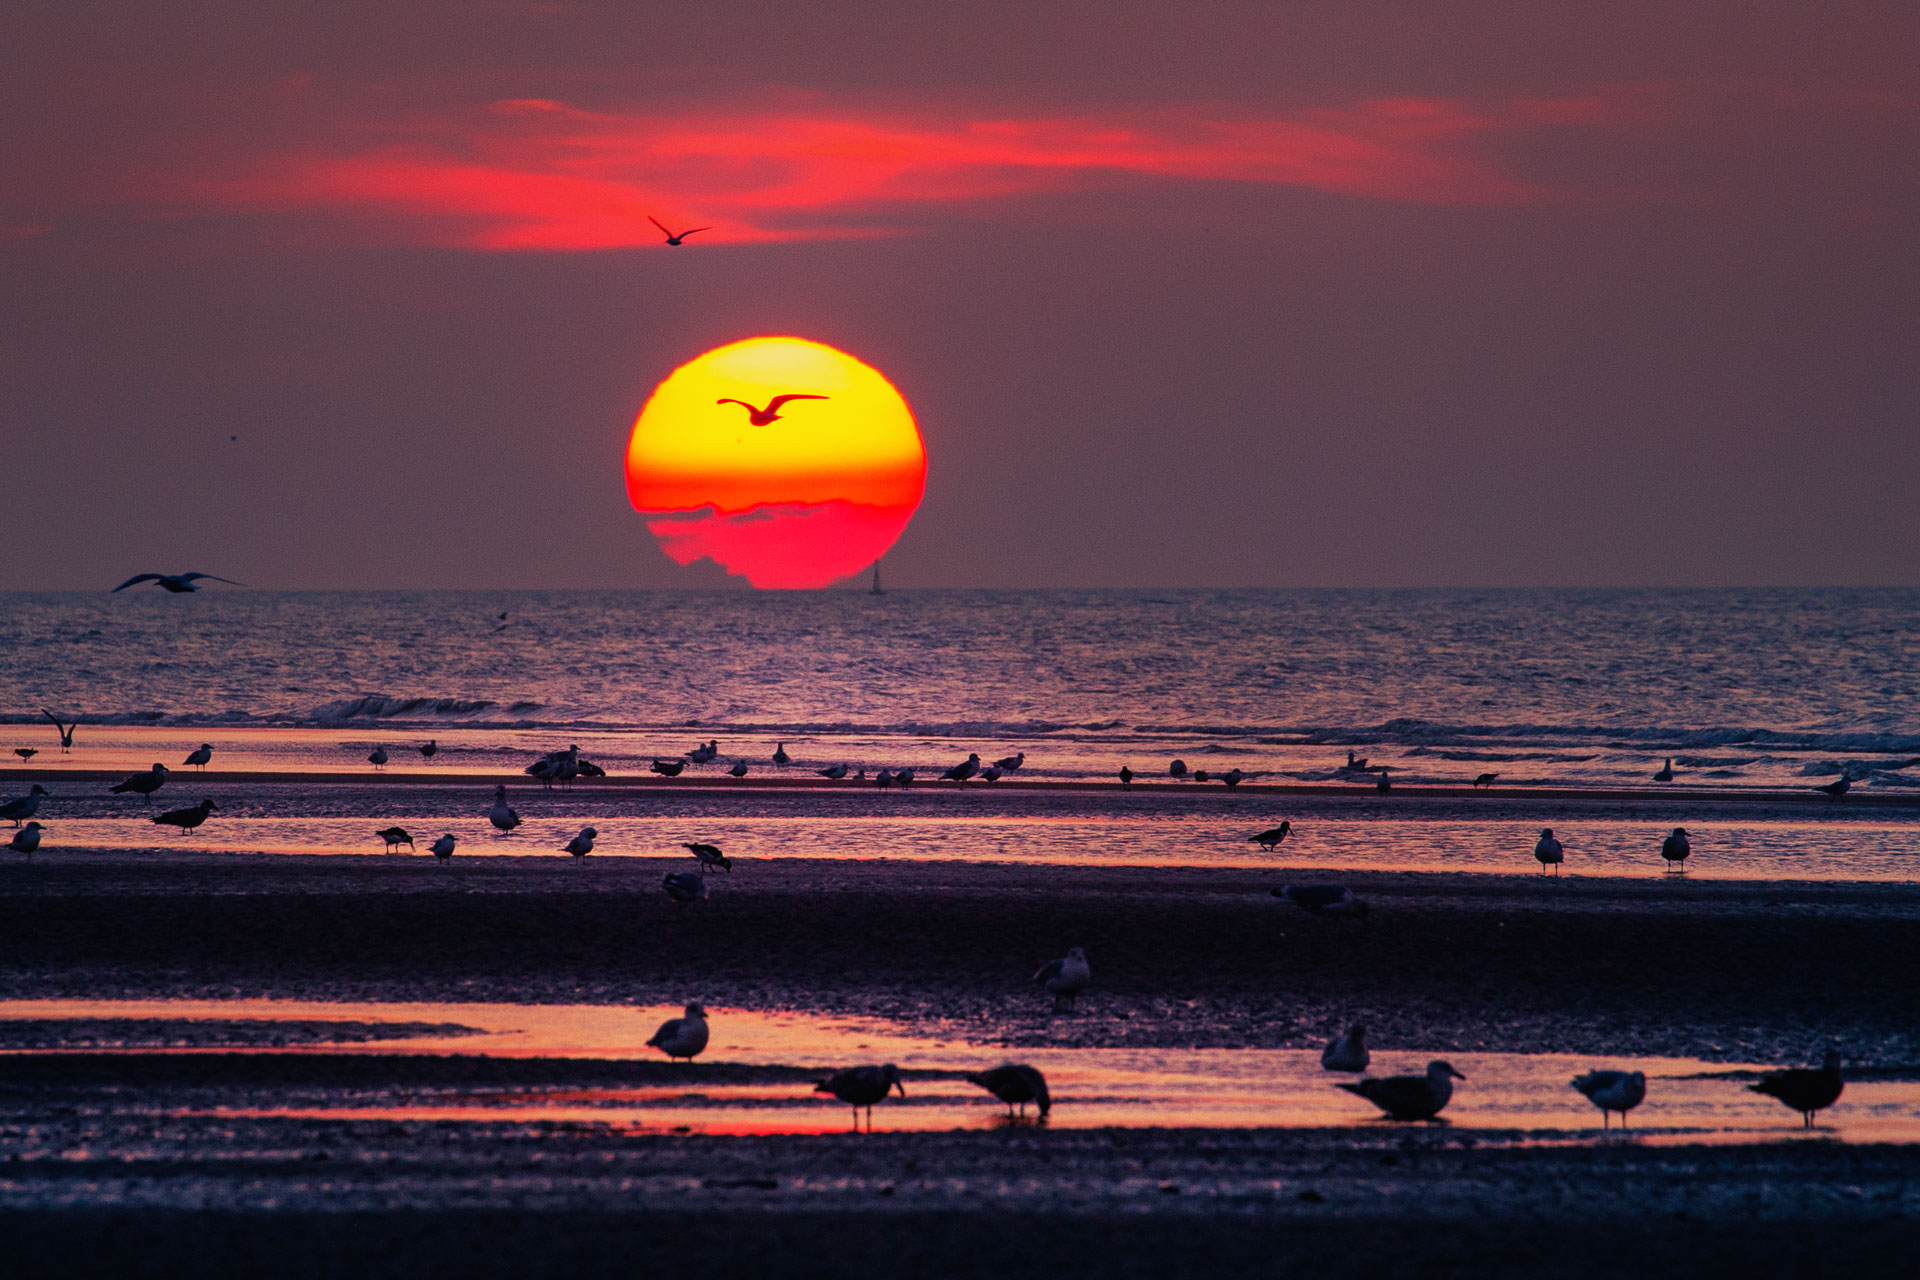 Sonnenuntergang am Meer in Belgien bei Zeebrugge.